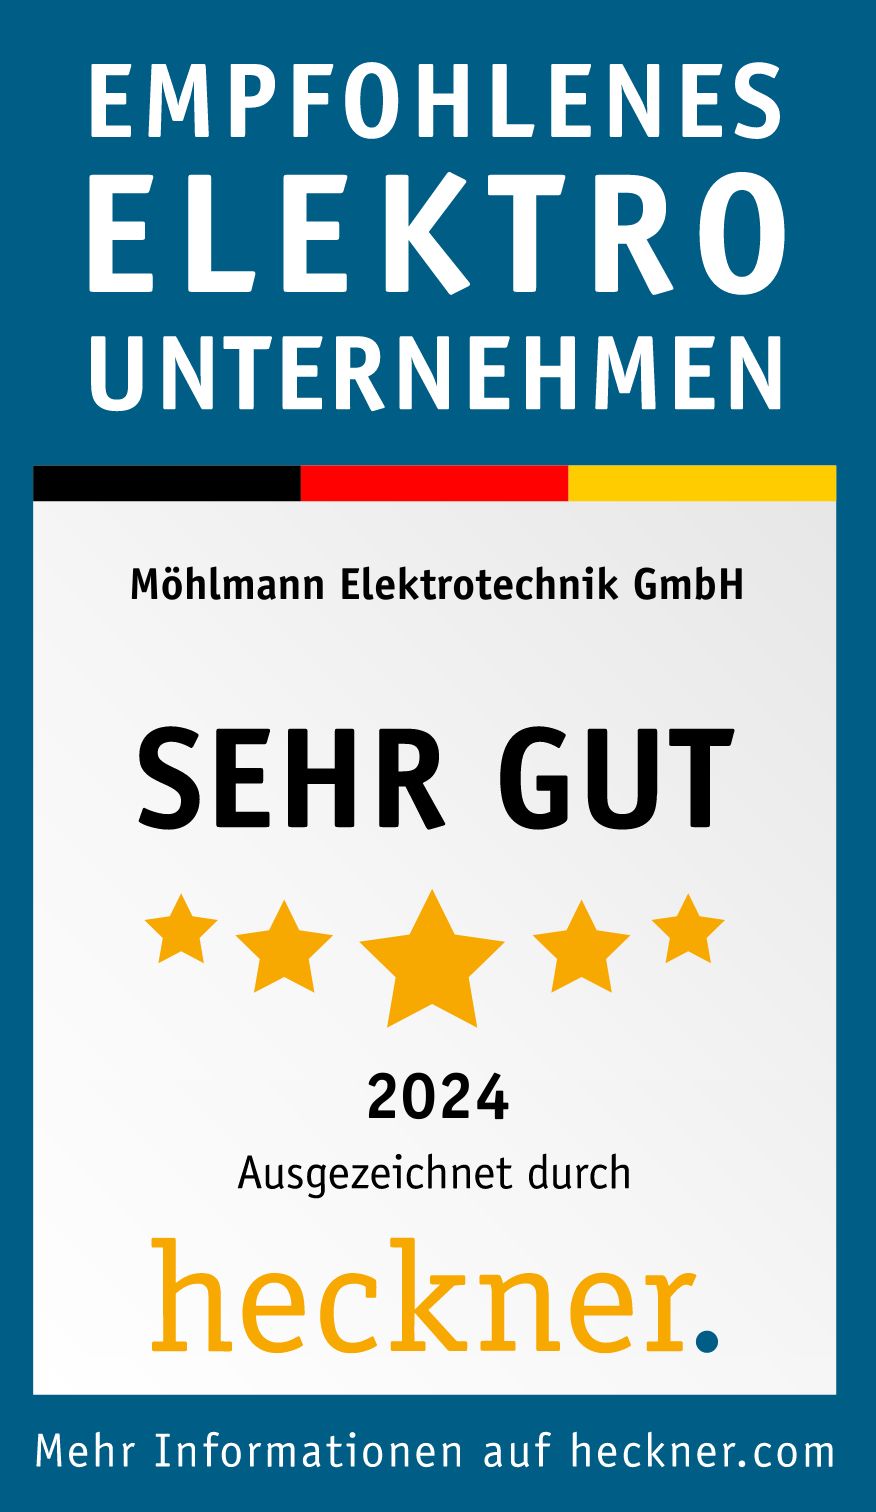 Möhlmann Elektrotechnik GmbH - Empfohlenes Elektrounternehmen 2024